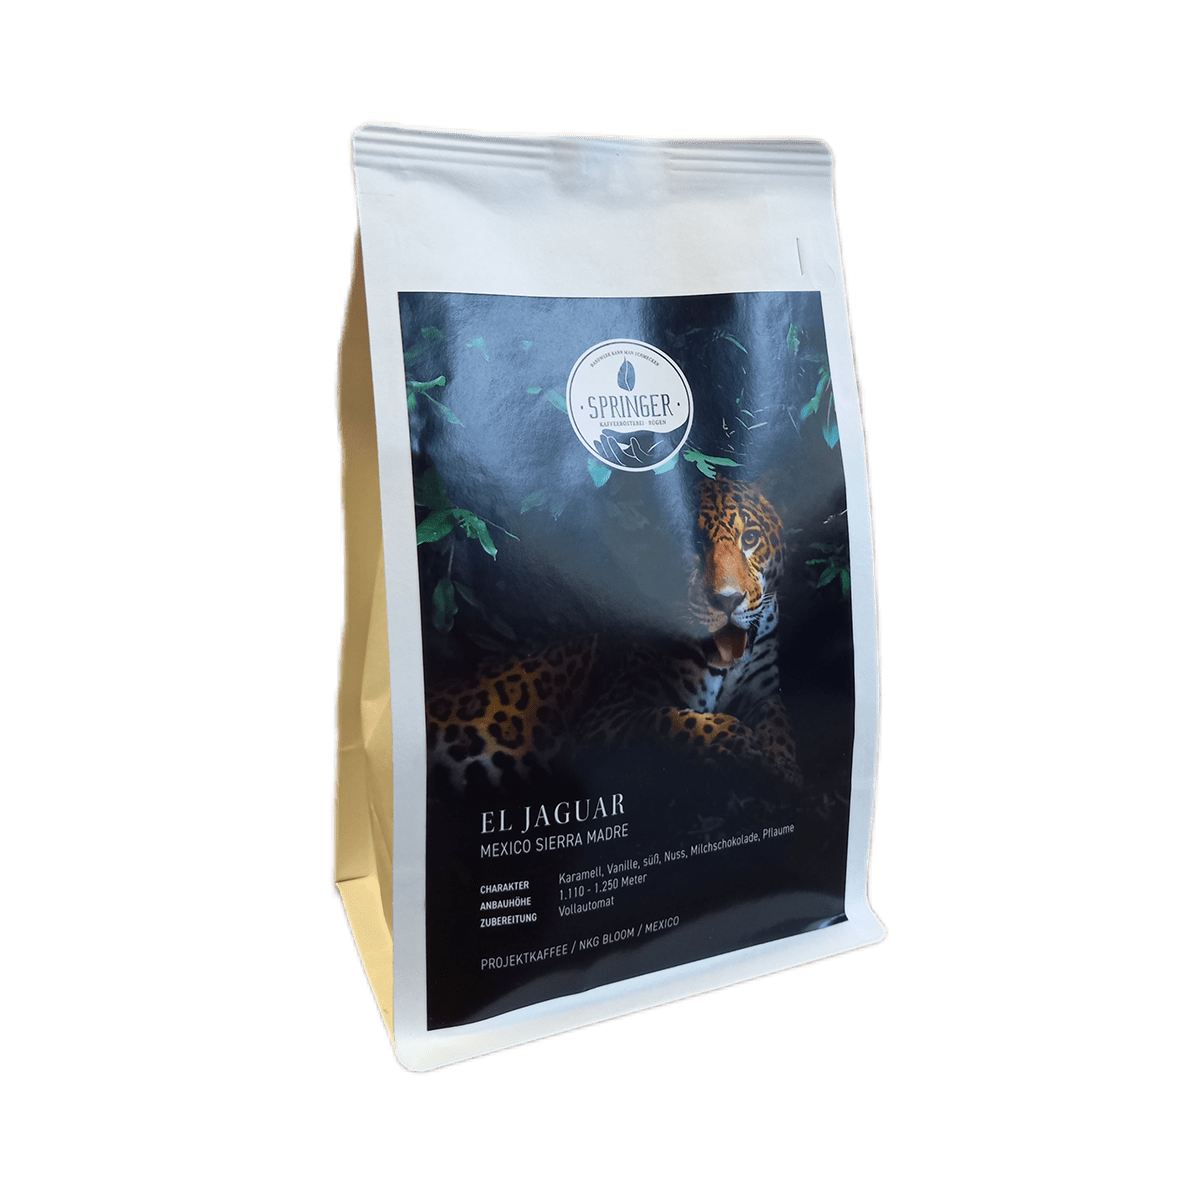 El Jaguar - Kaffeesorte aus Mexiko der Springer Kaffeerösterei auf Rügen